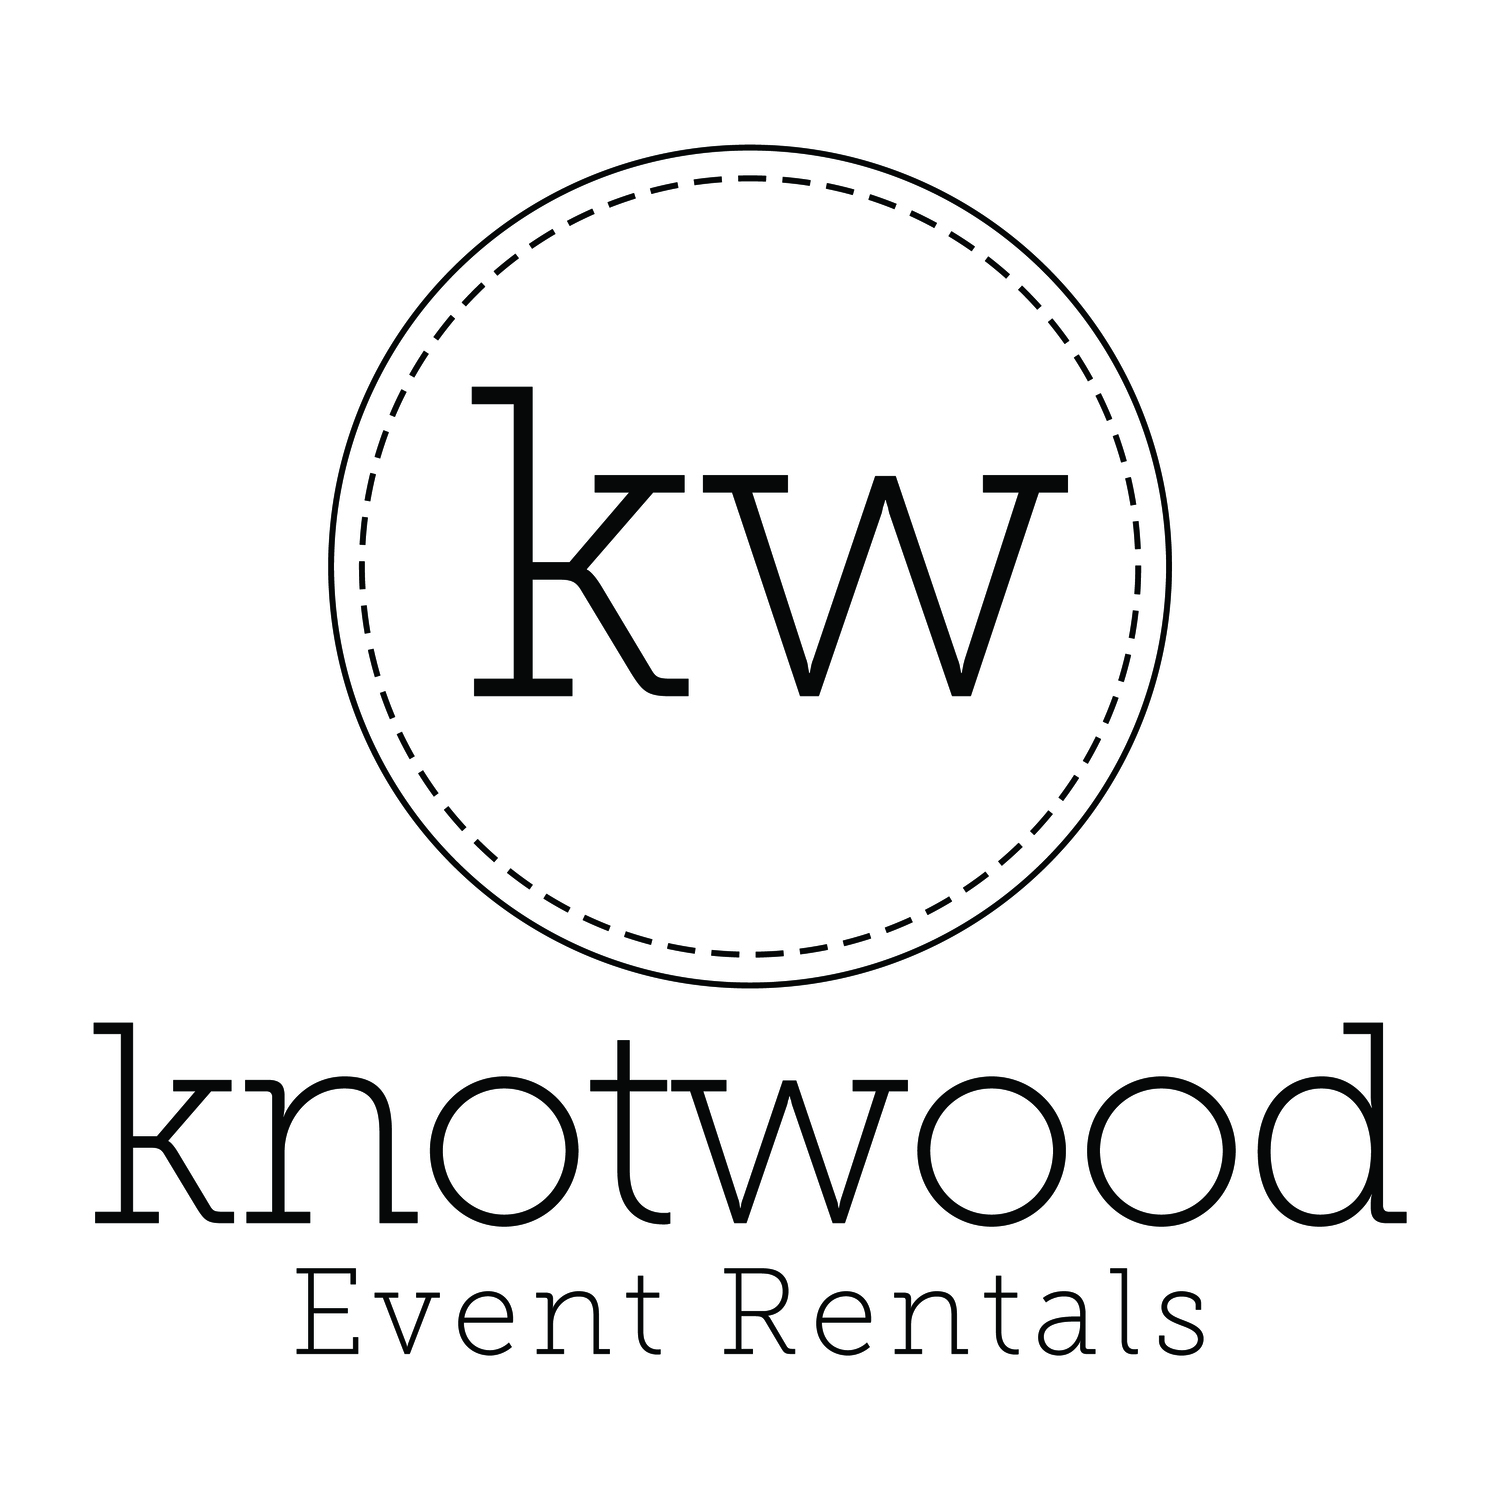 Knotwood Event Rentals